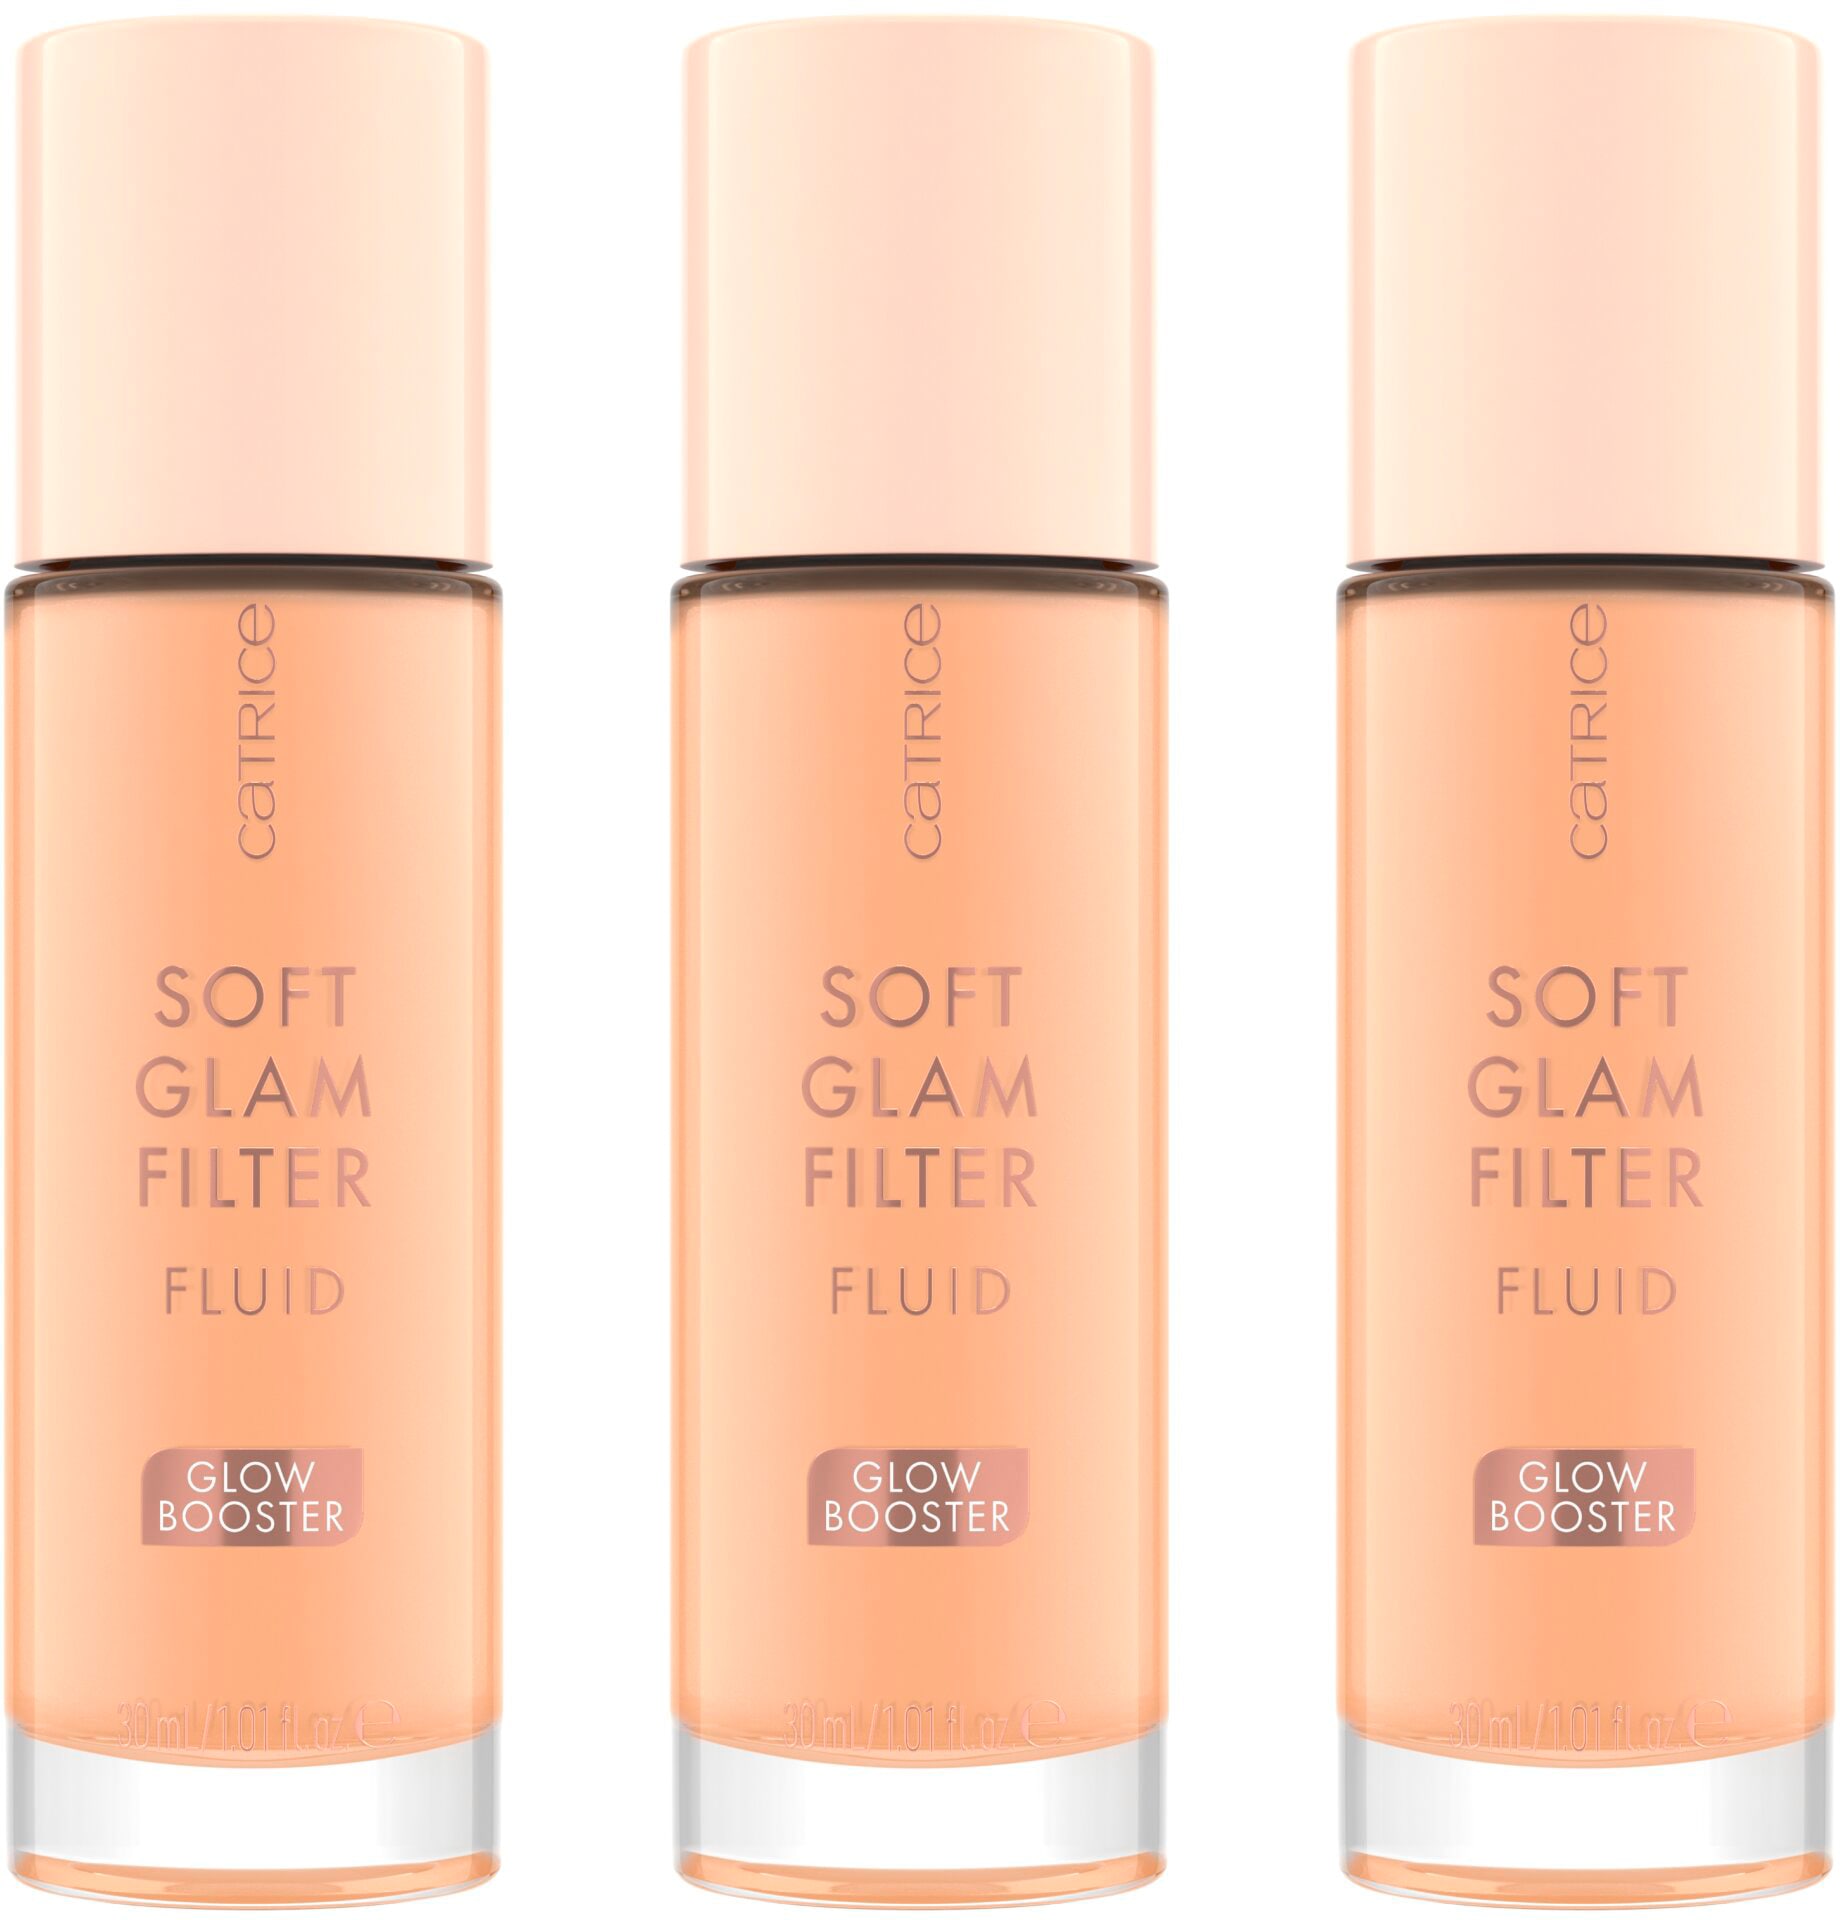 Primer »Soft Glam Filter Fluid«